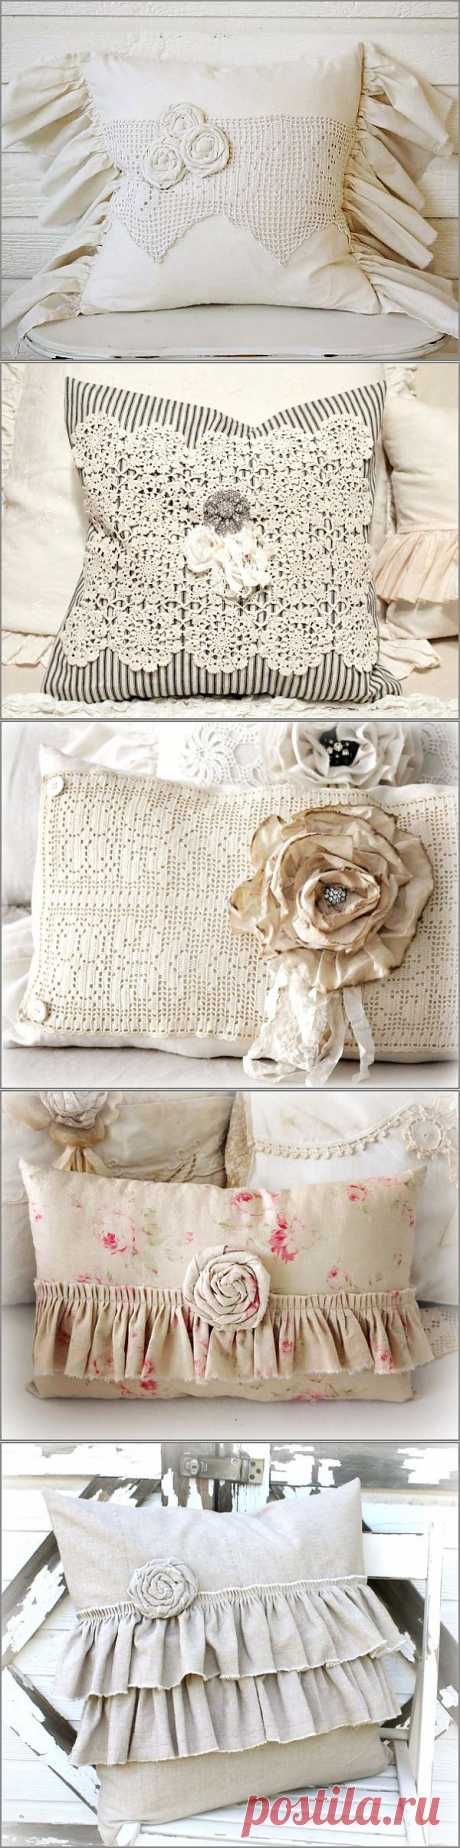 Прекрасные винтажные подушки от Katies Rose Cottage.